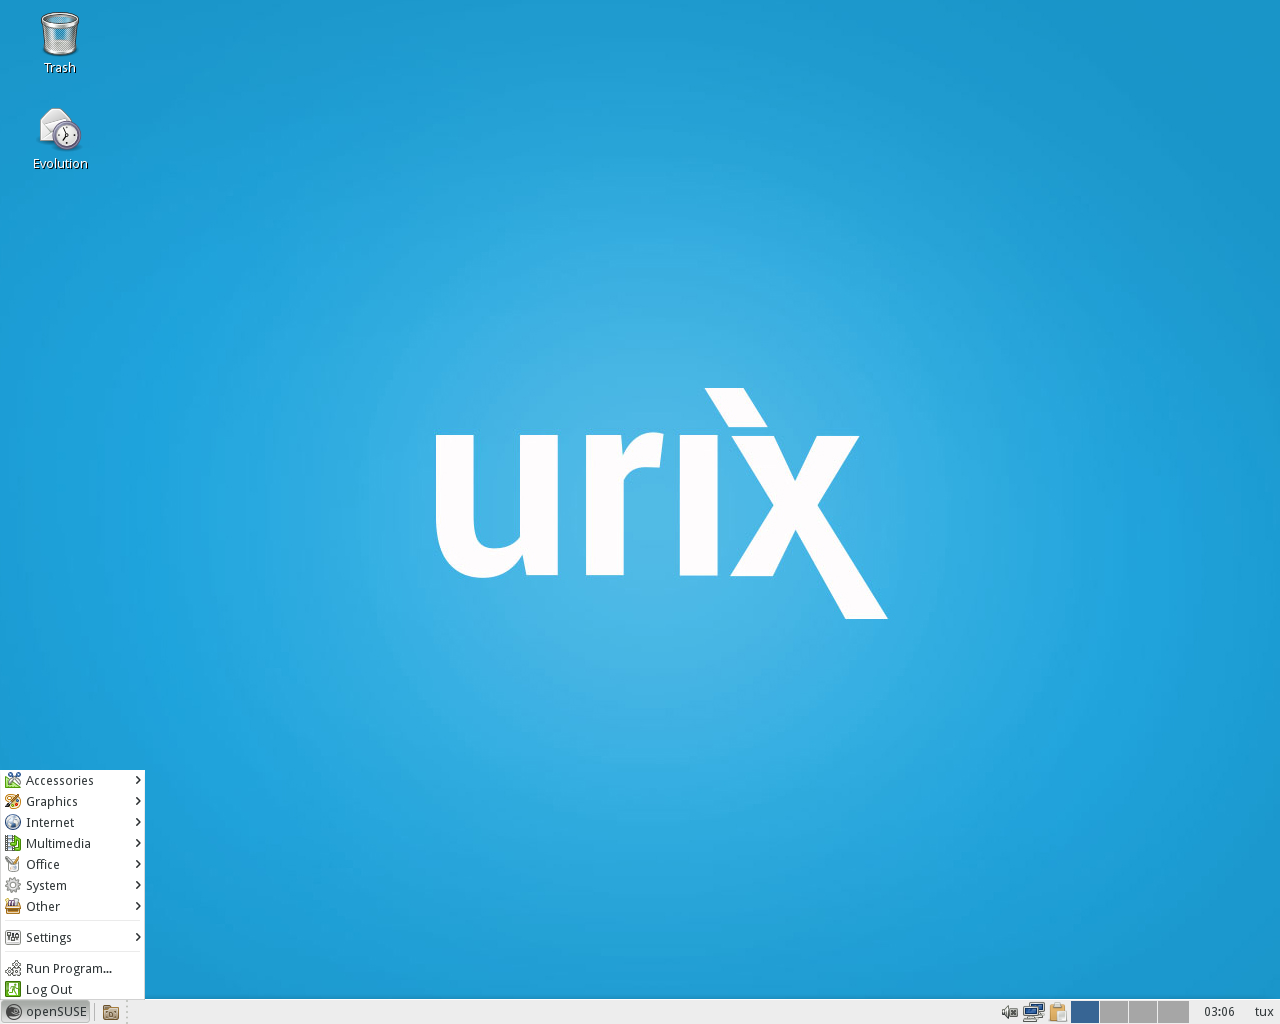 URIX OS